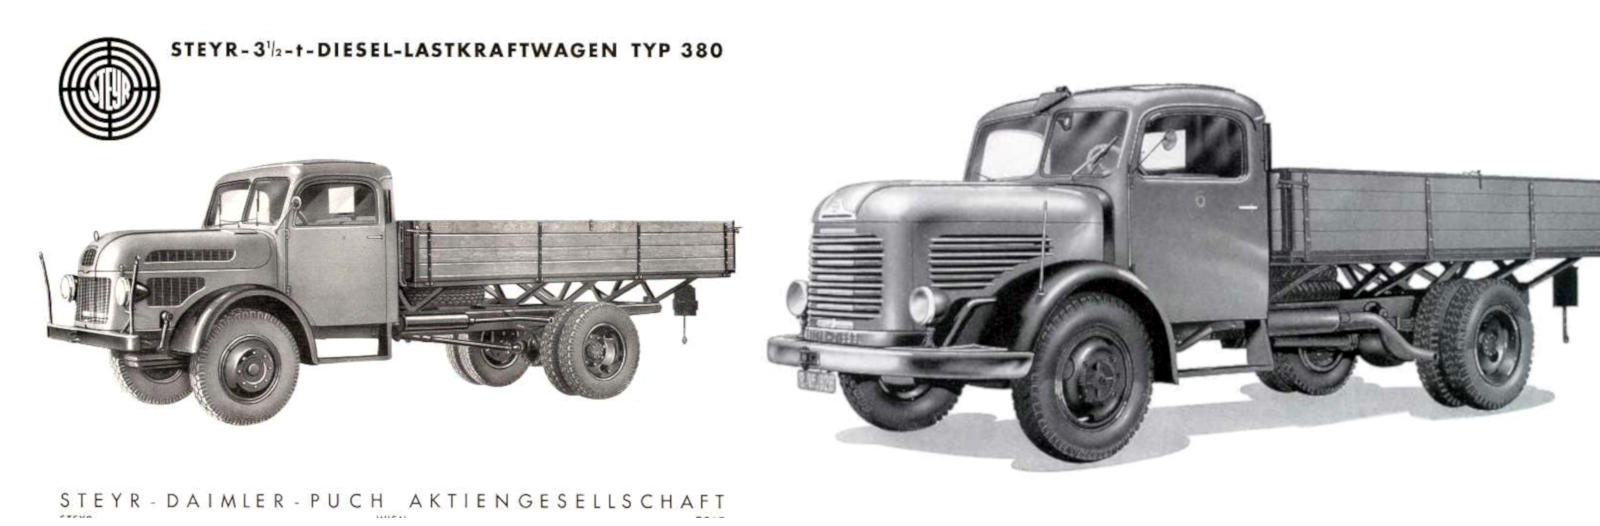 Steyr 380 – der erste Diesel LKW von Steyr nach dem Krieg